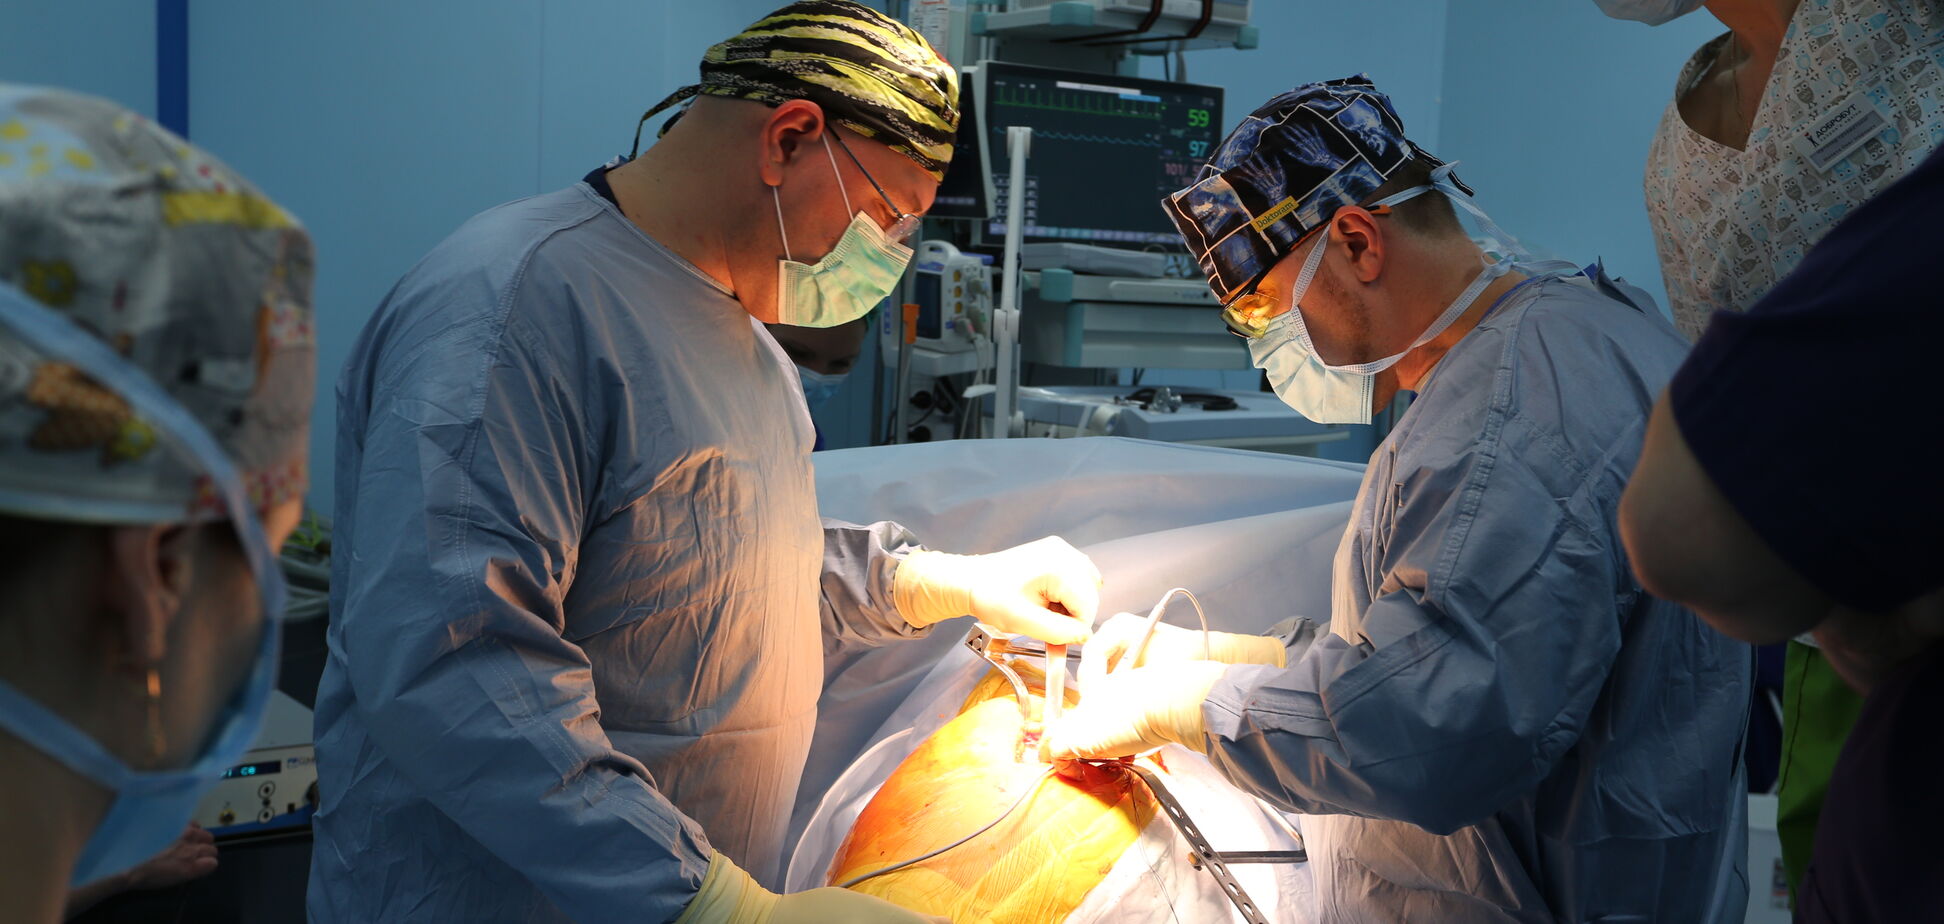 Частные ортопедия и травматология: шанс поднять украинскую медицину на европейский уровень 